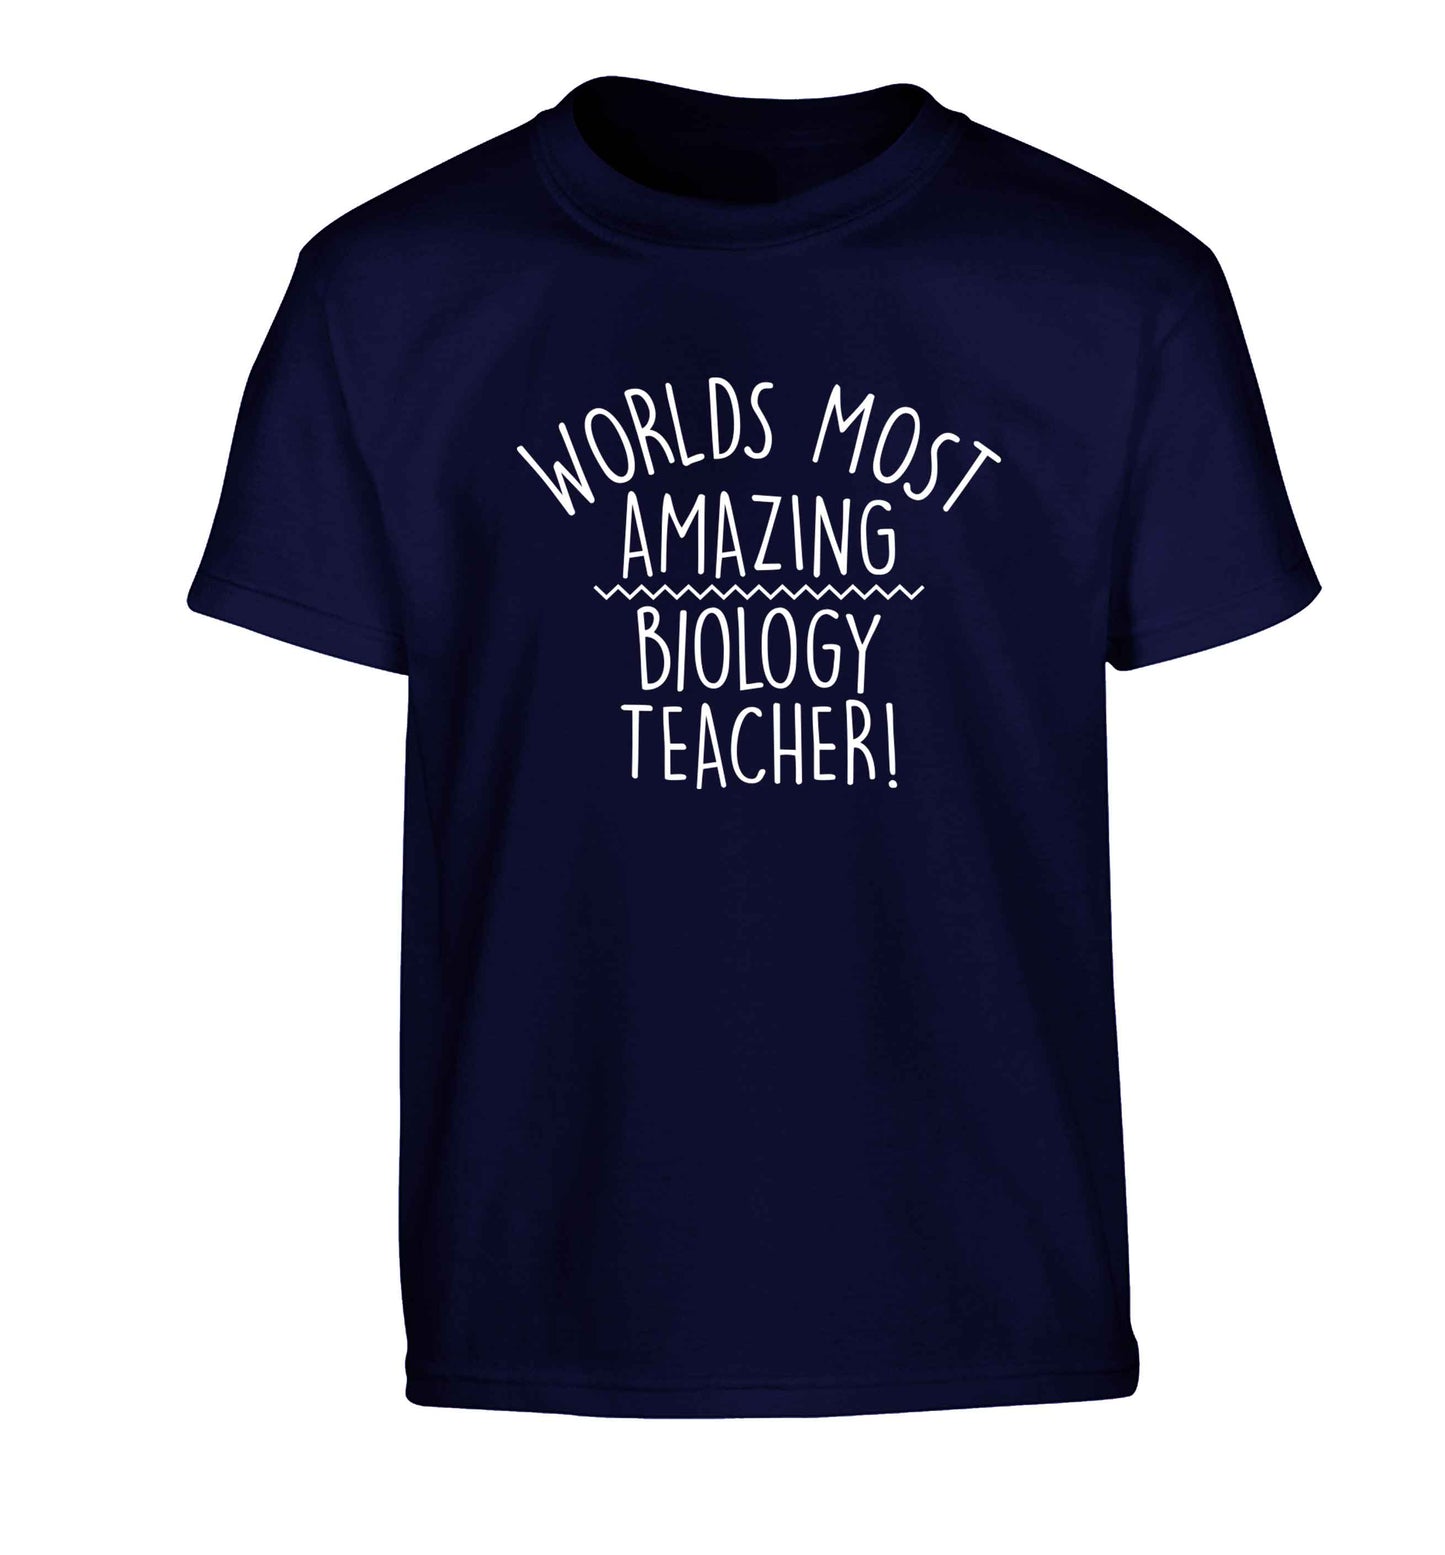 Worlds most amazing biology teacher Children's navy Tshirt 12-13 Years